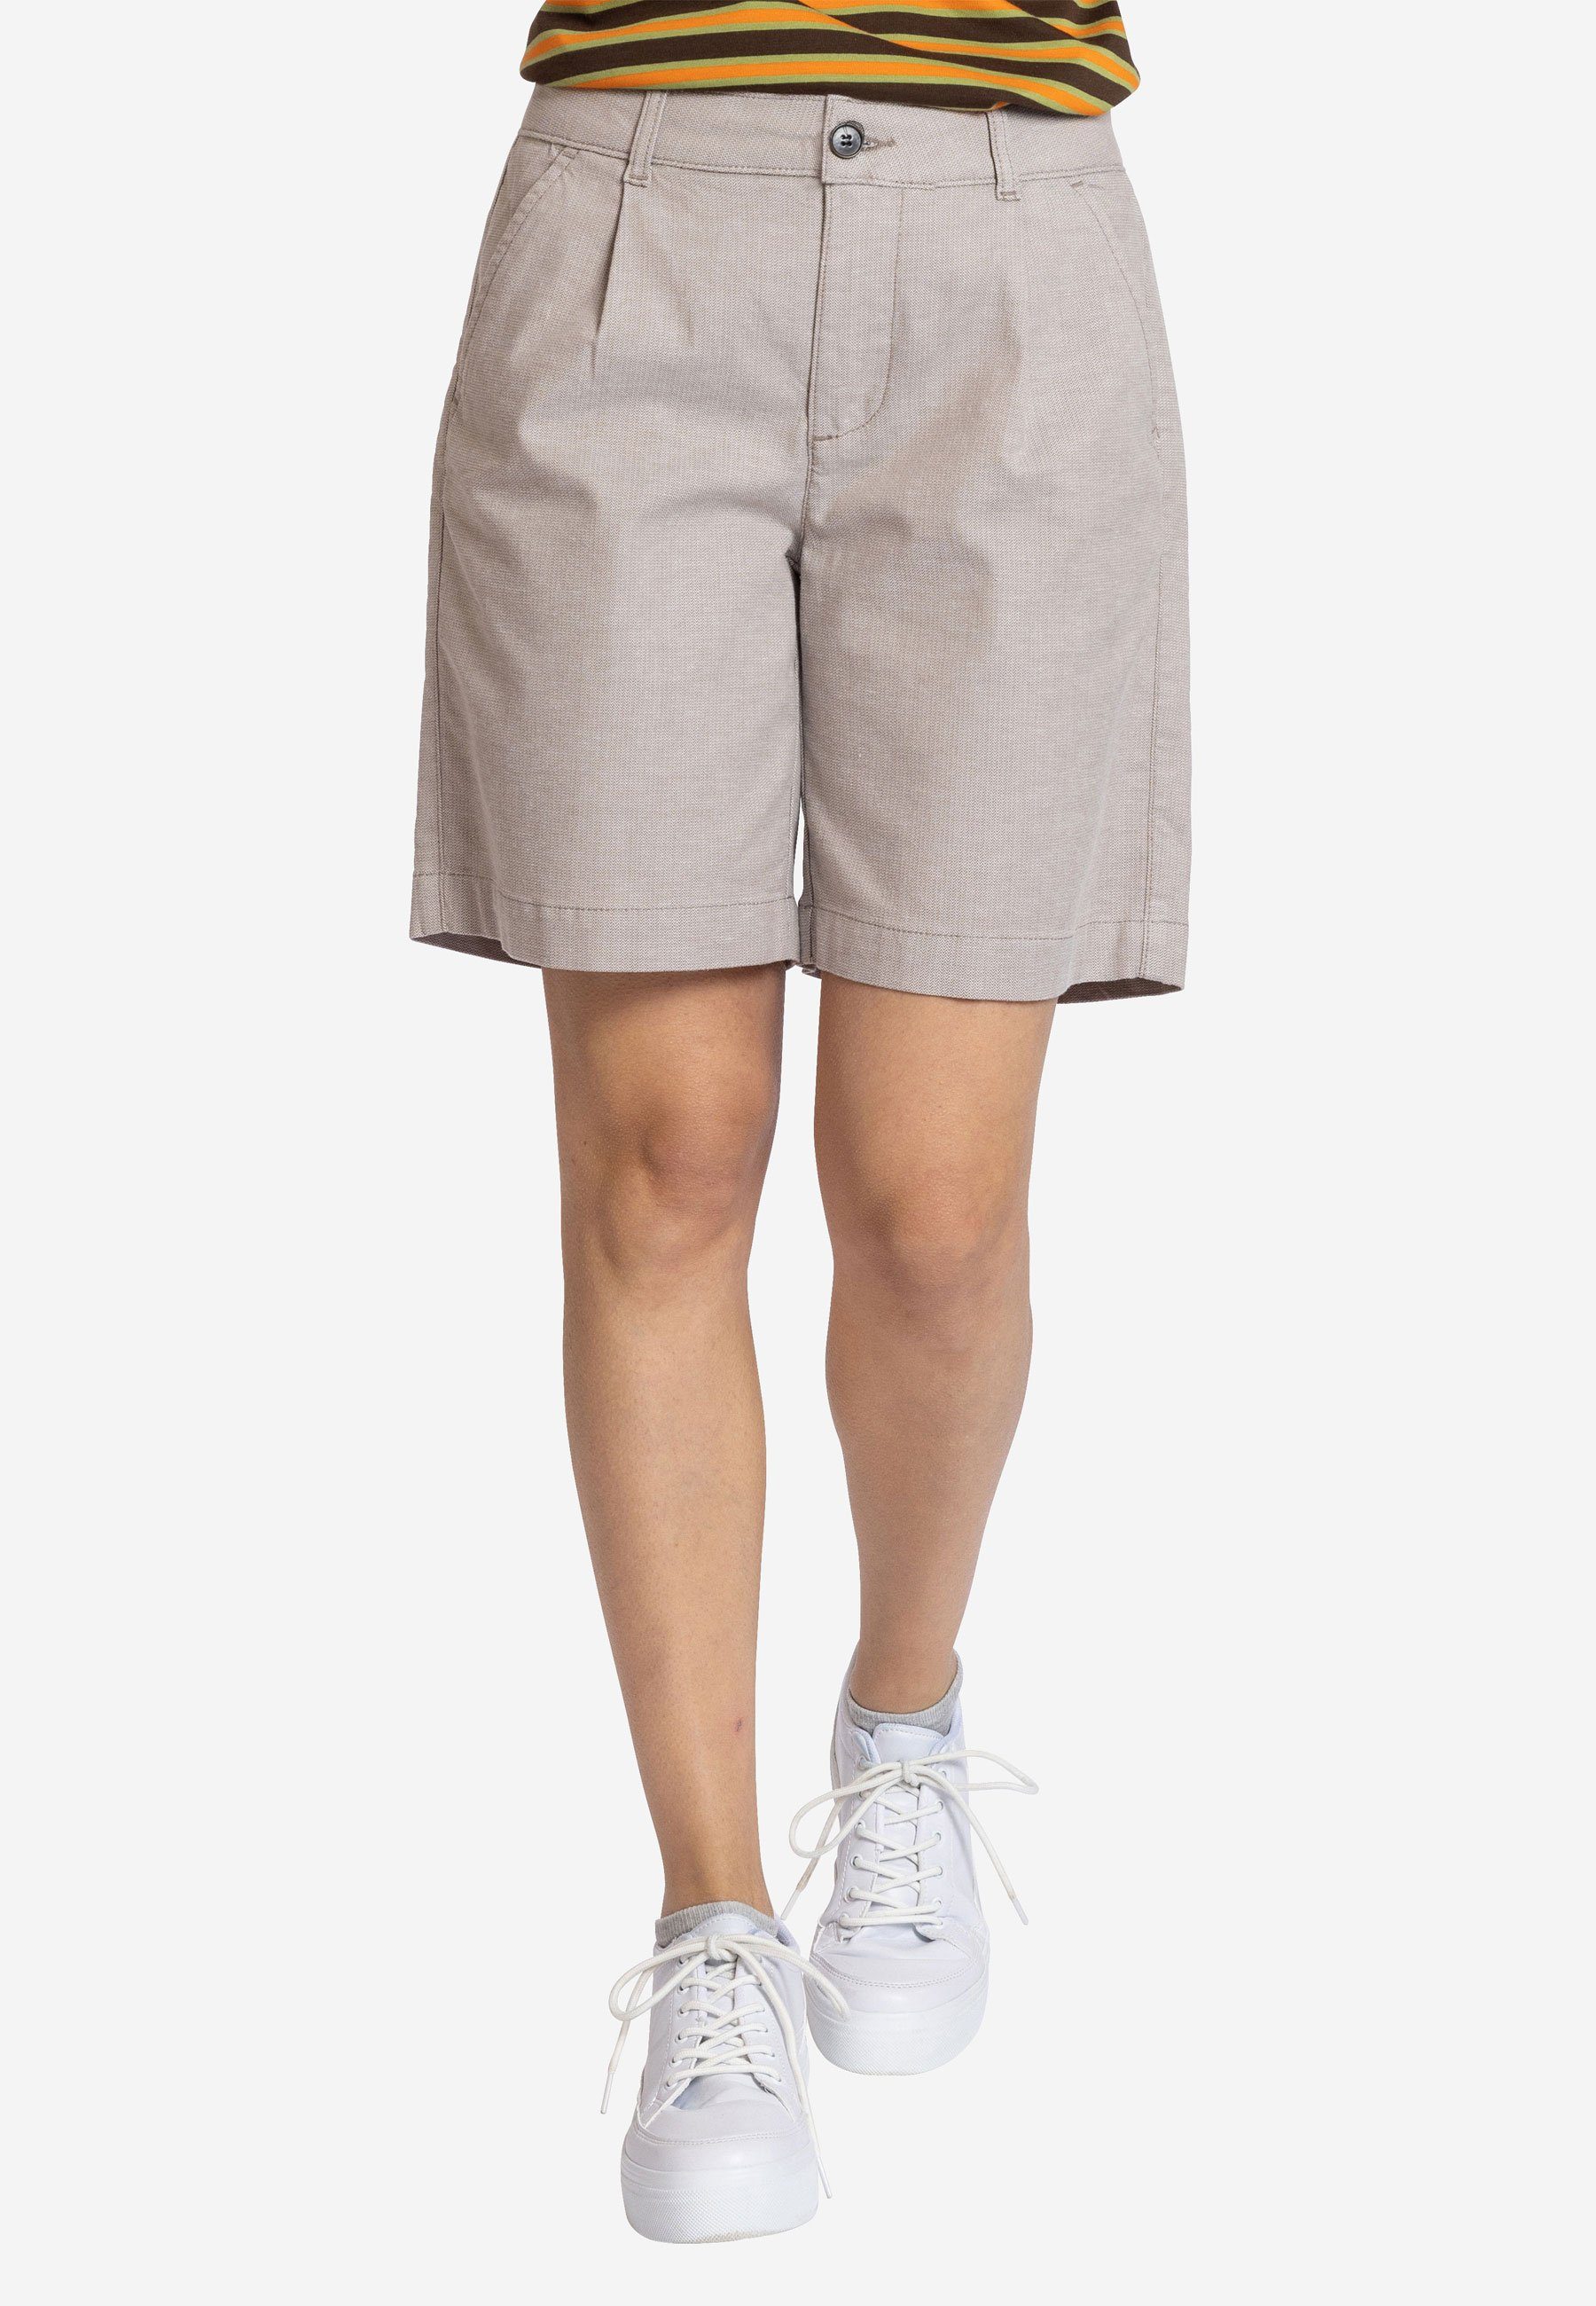 Hose - white Shorts Bermuda Strandshorts Shorty khaki kurze Elkline